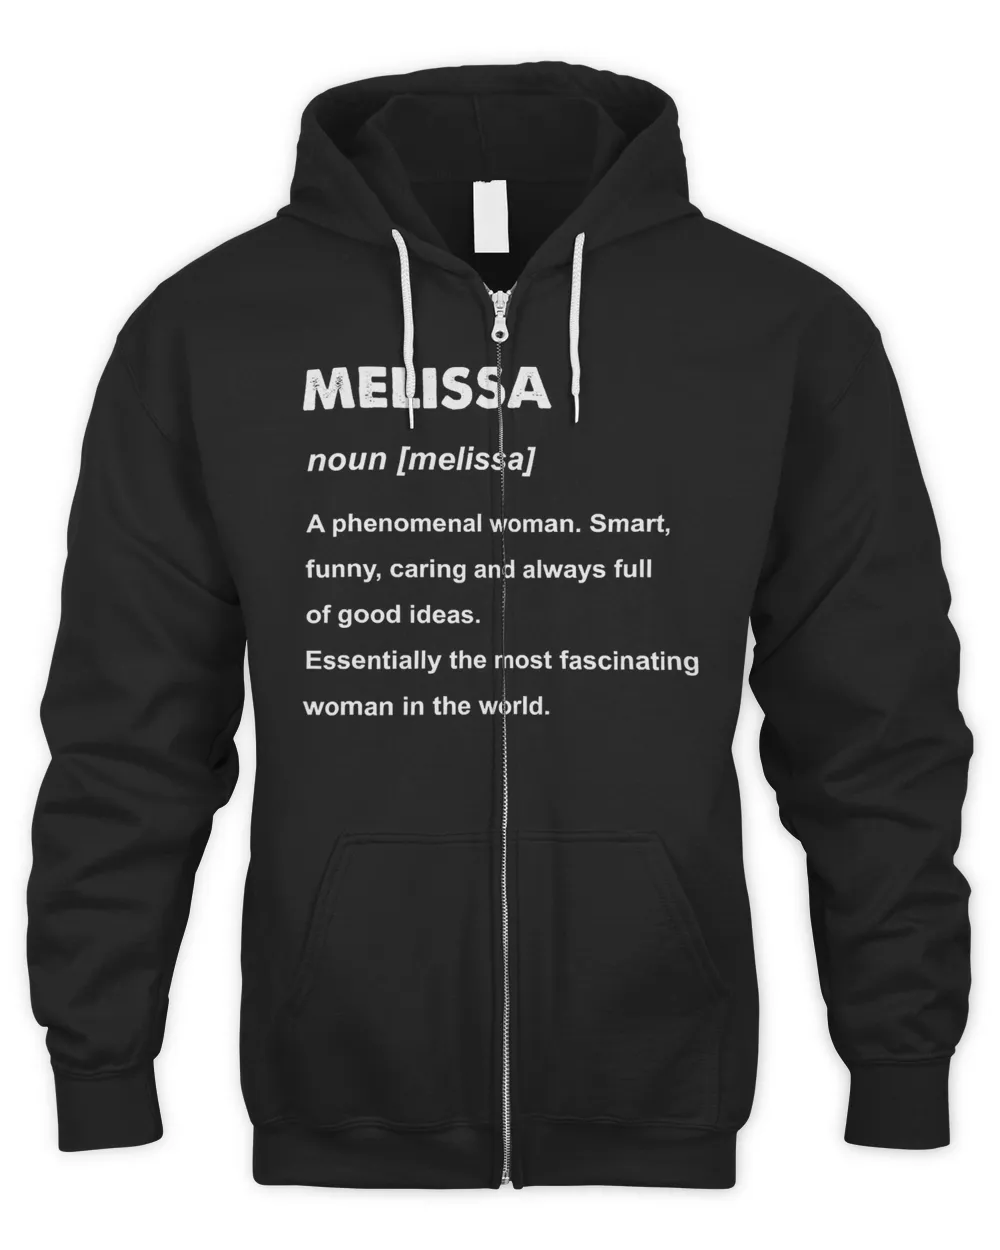 Melissa Name